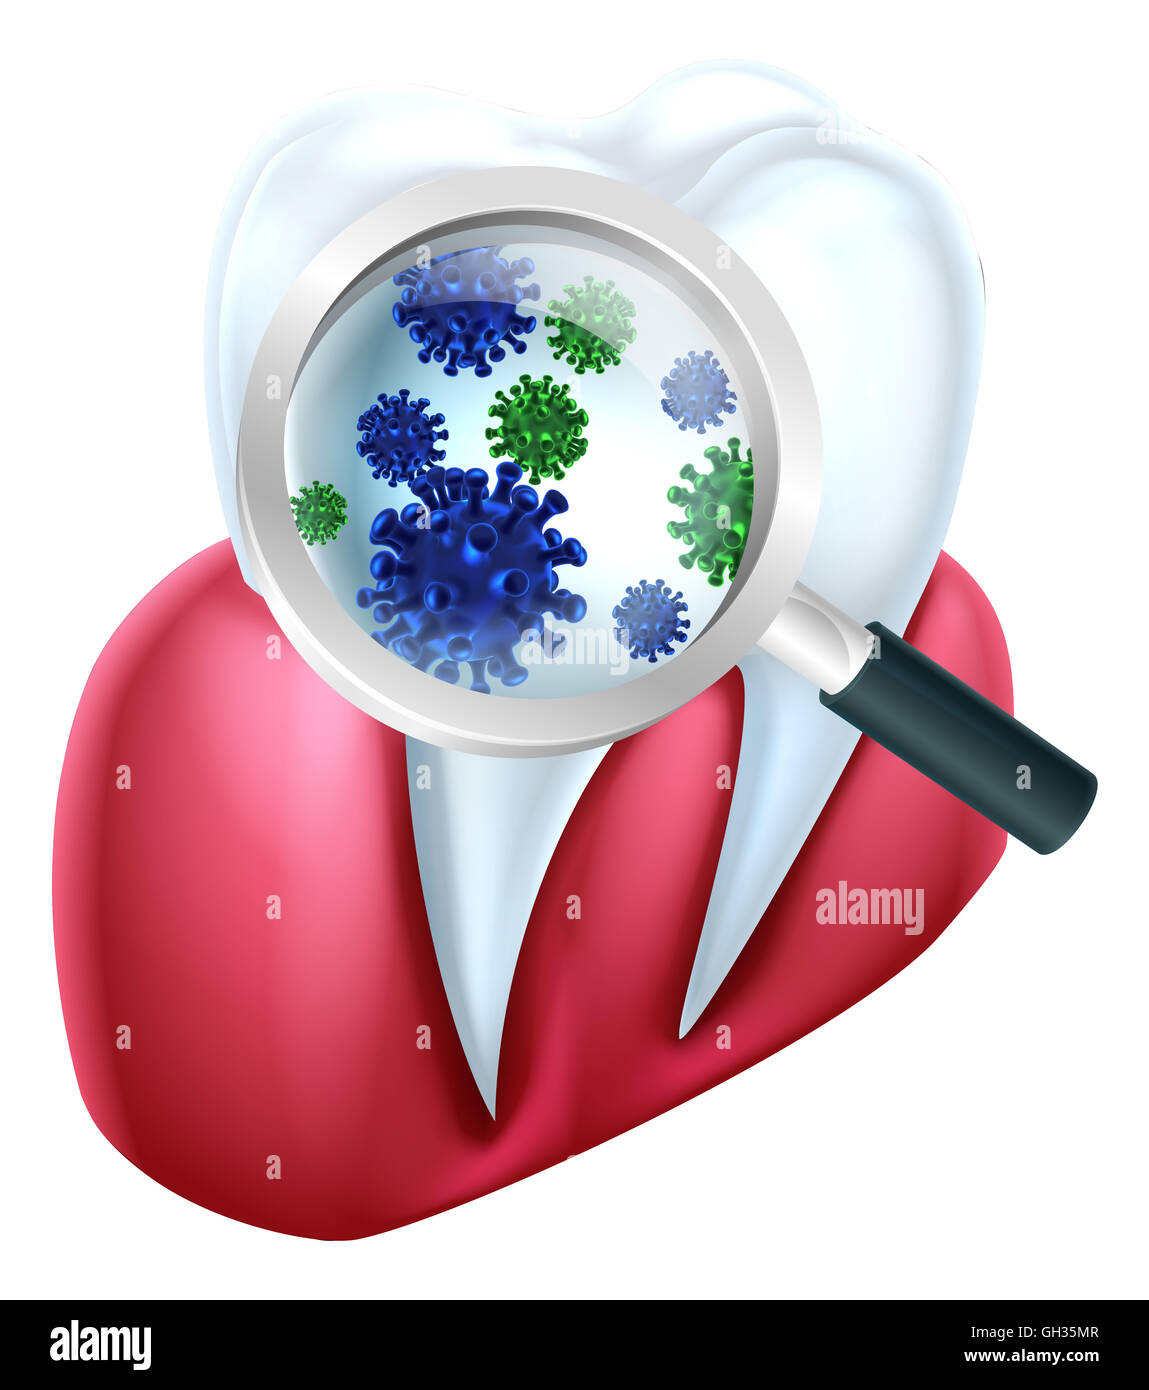 Eine zahnärztliche medizinische Illustration von einem Zahn und Zahnfleisch bedeckt in Bakterien, die durch eine Lupe betrachtet Stockfoto